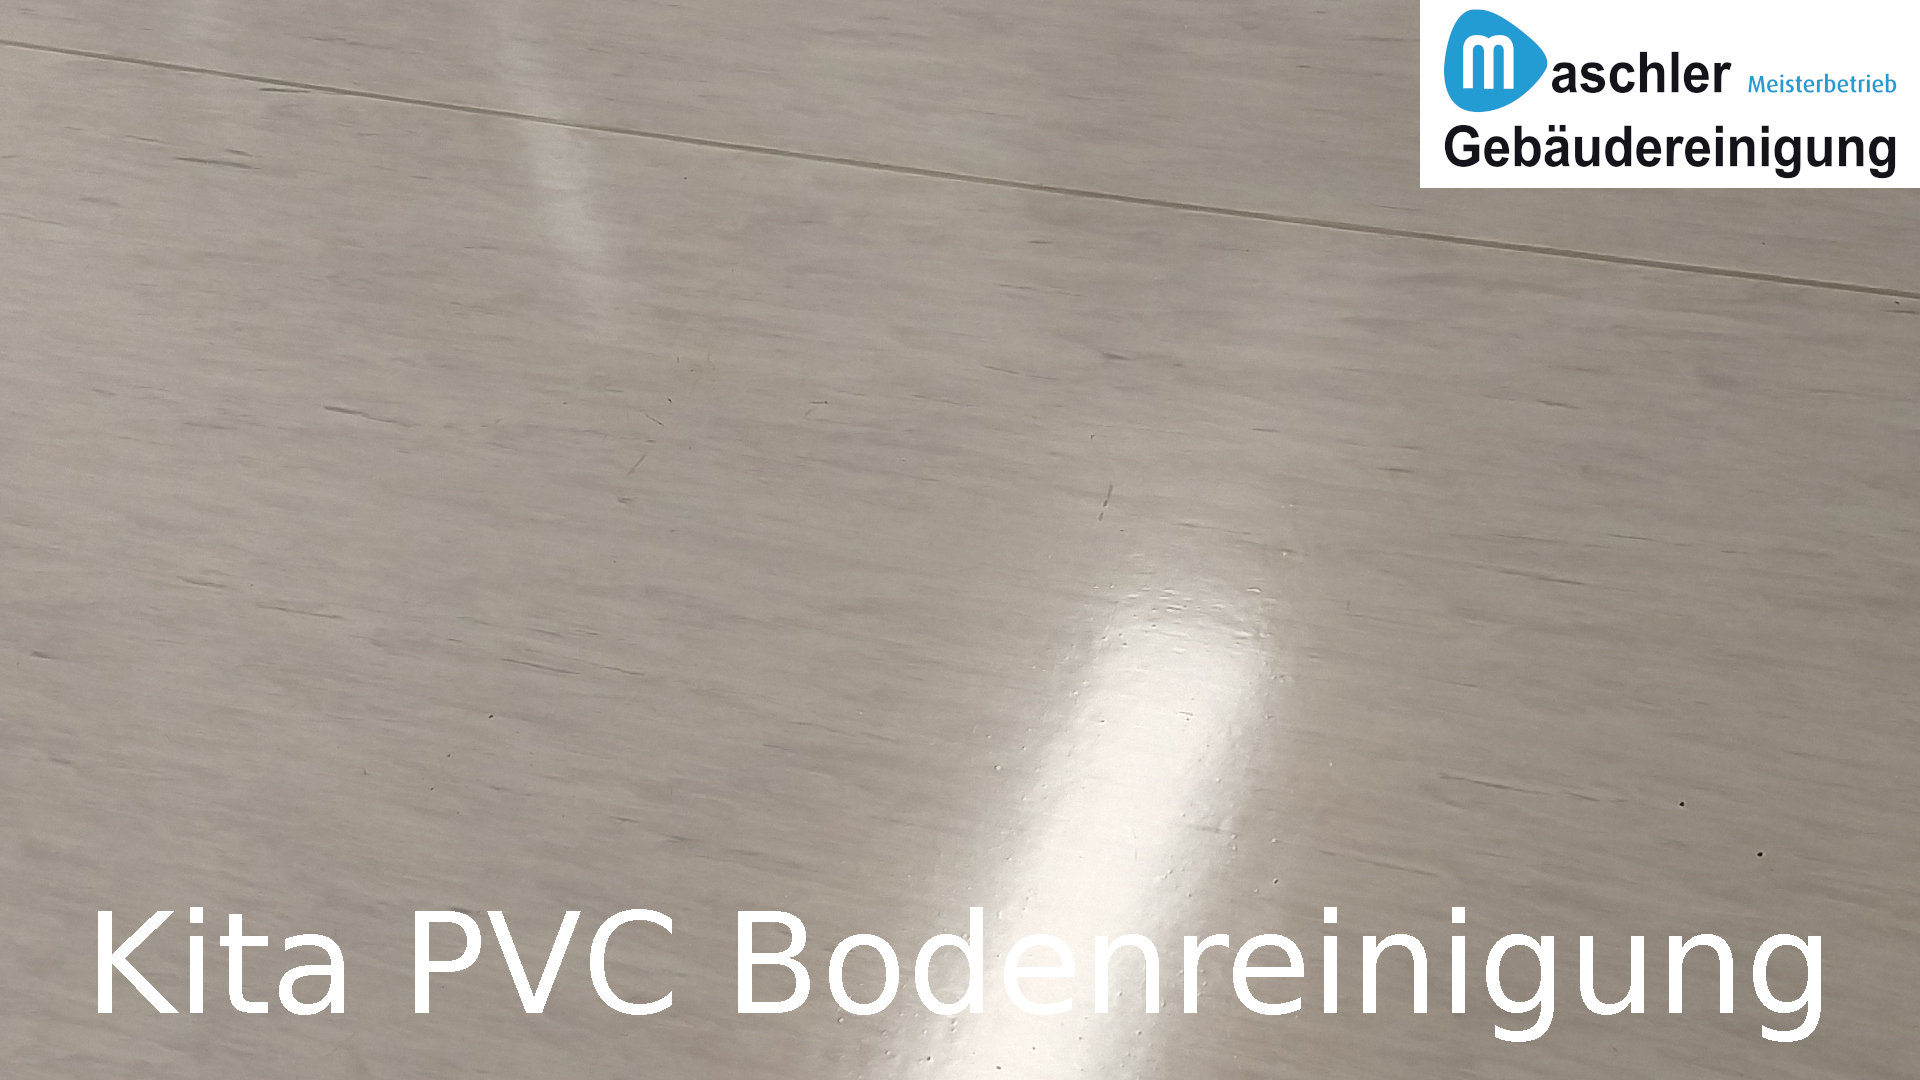 Kindertagesstätte PVC Bodenreinigung - Gebäudereinigung Maschler GmbH Rostock